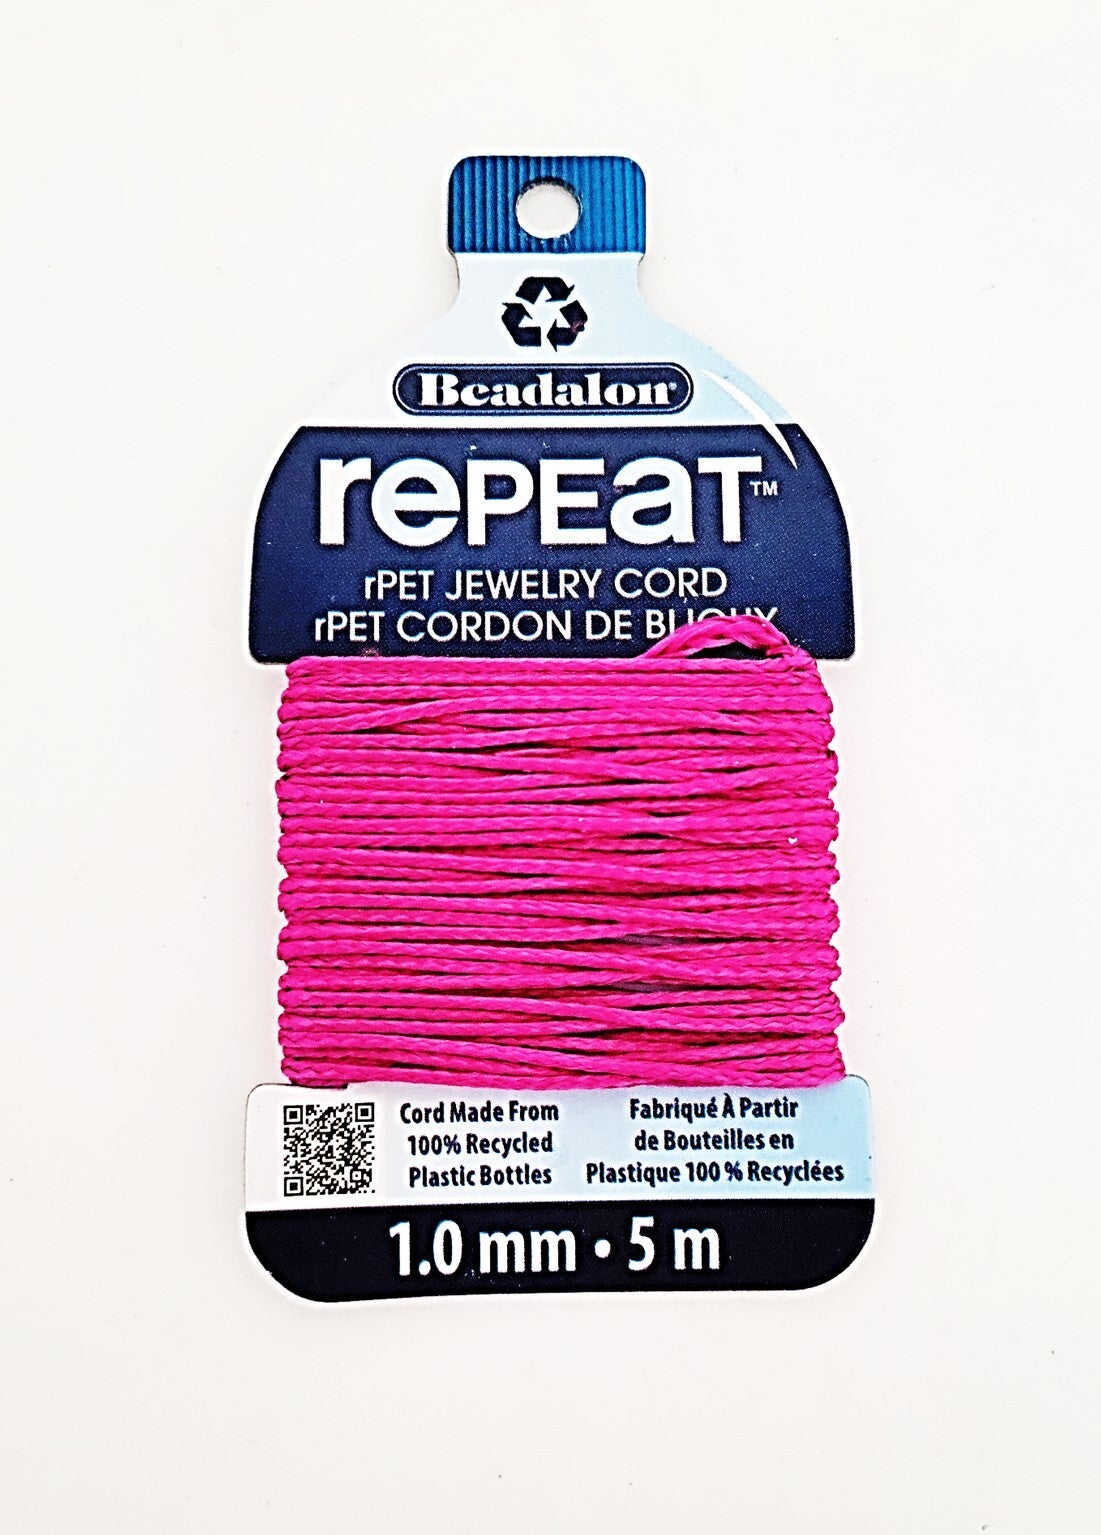 RePEat Jewelry Cord | Maggie T Designs